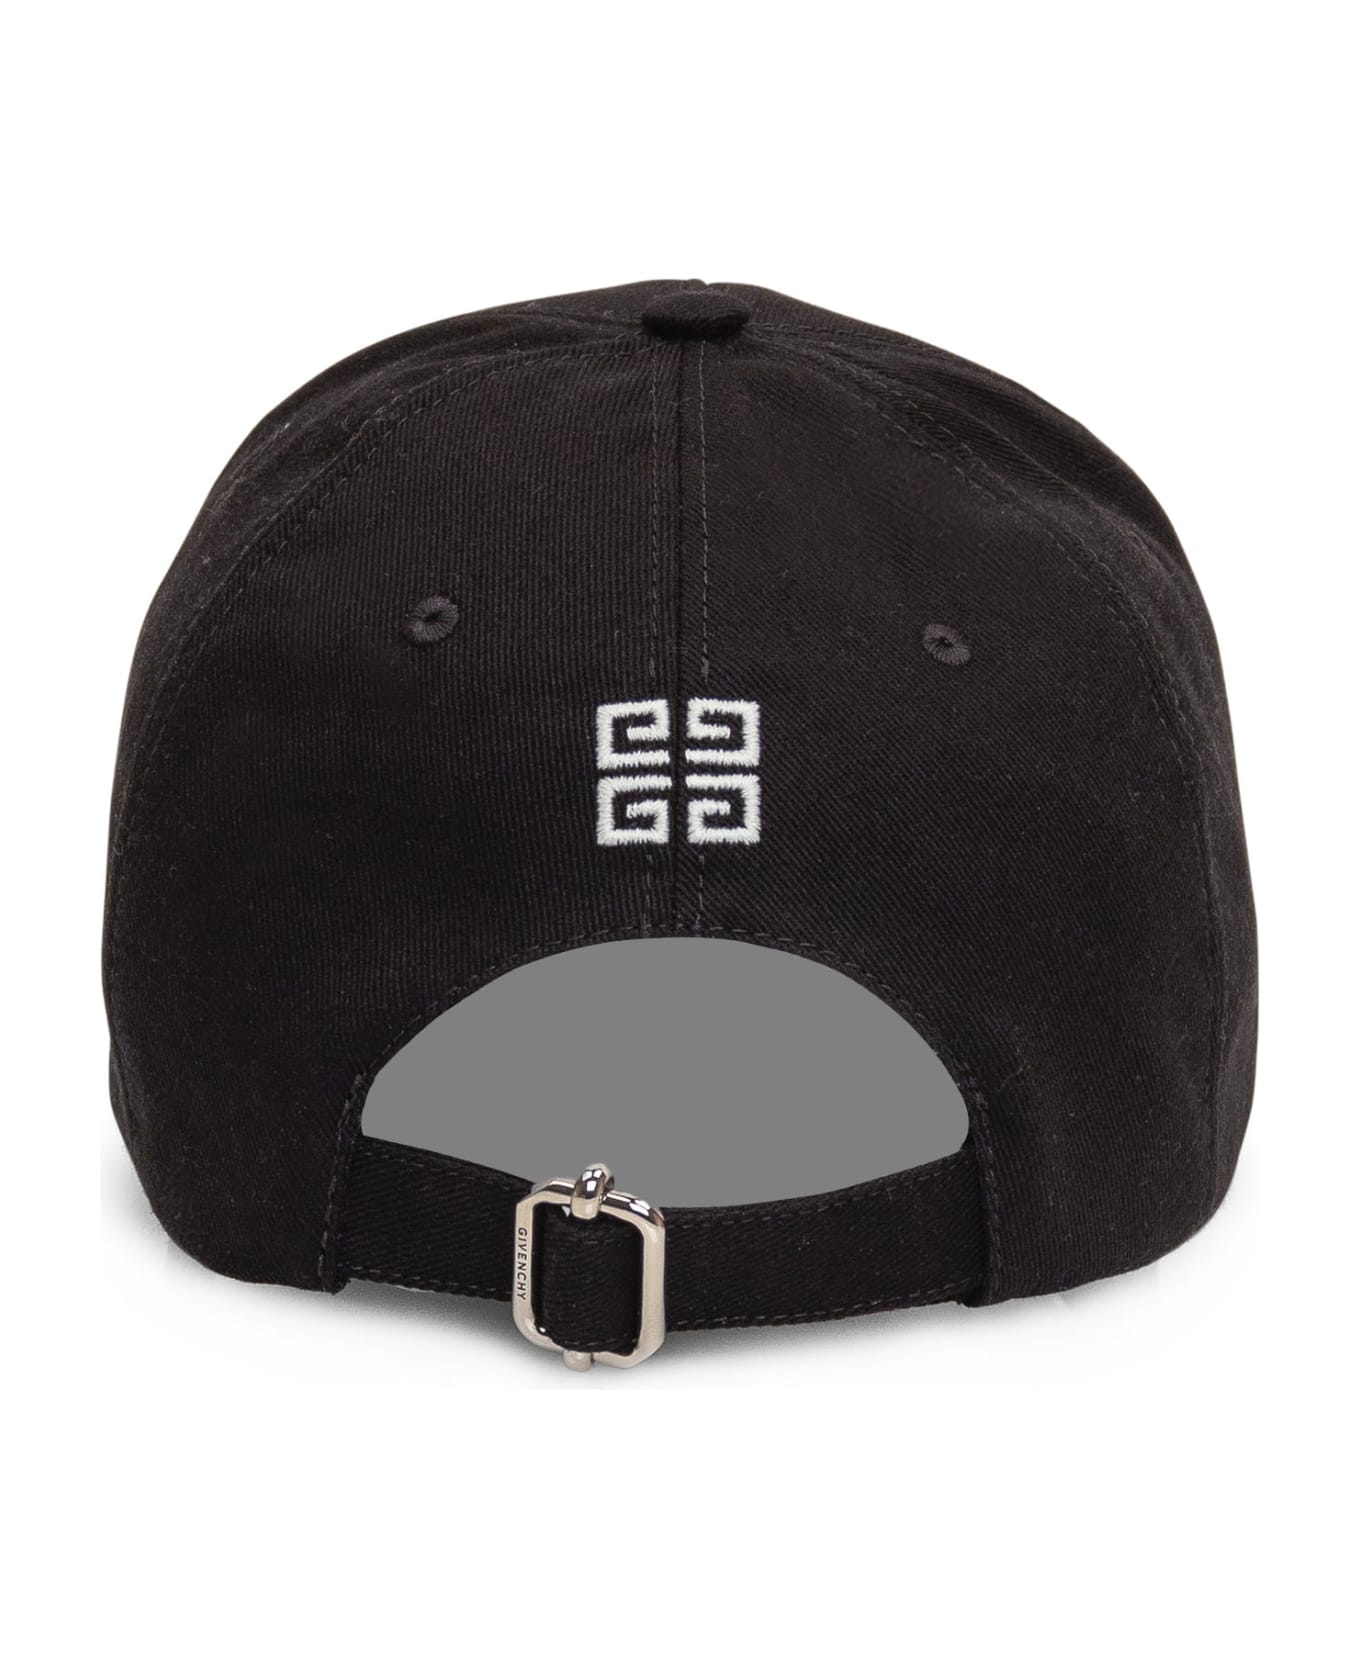 Givenchy Logo Baseball Cap - black 帽子